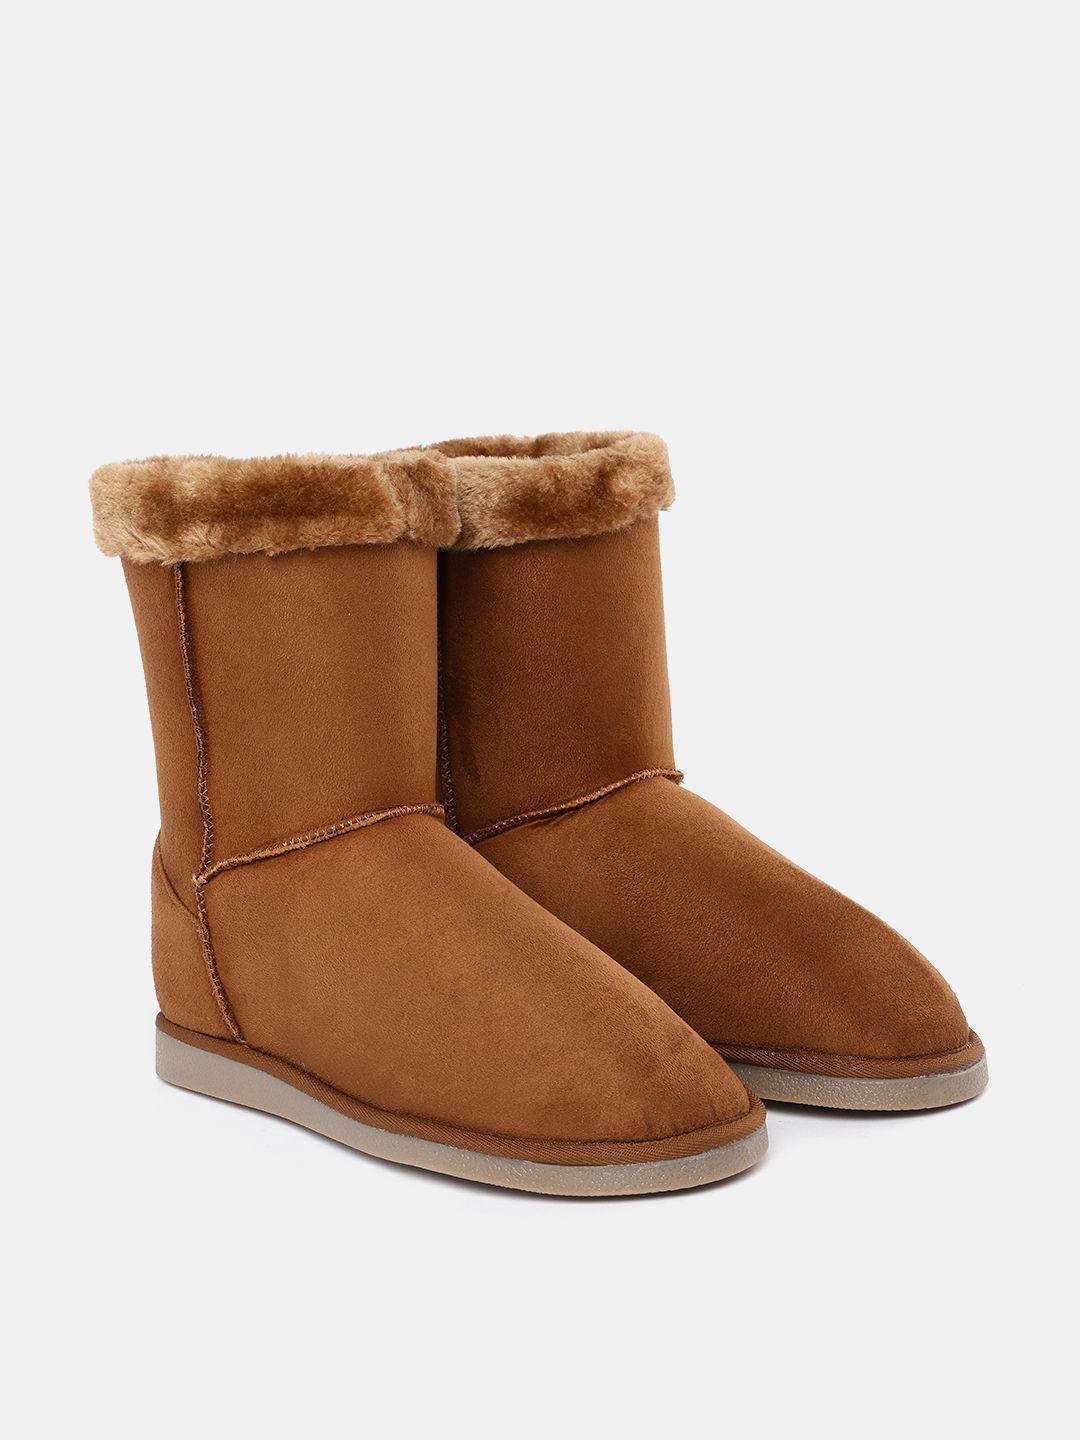 carlton-london-women-tan-flat-winter-boots-with-faux-fur-trim-detail